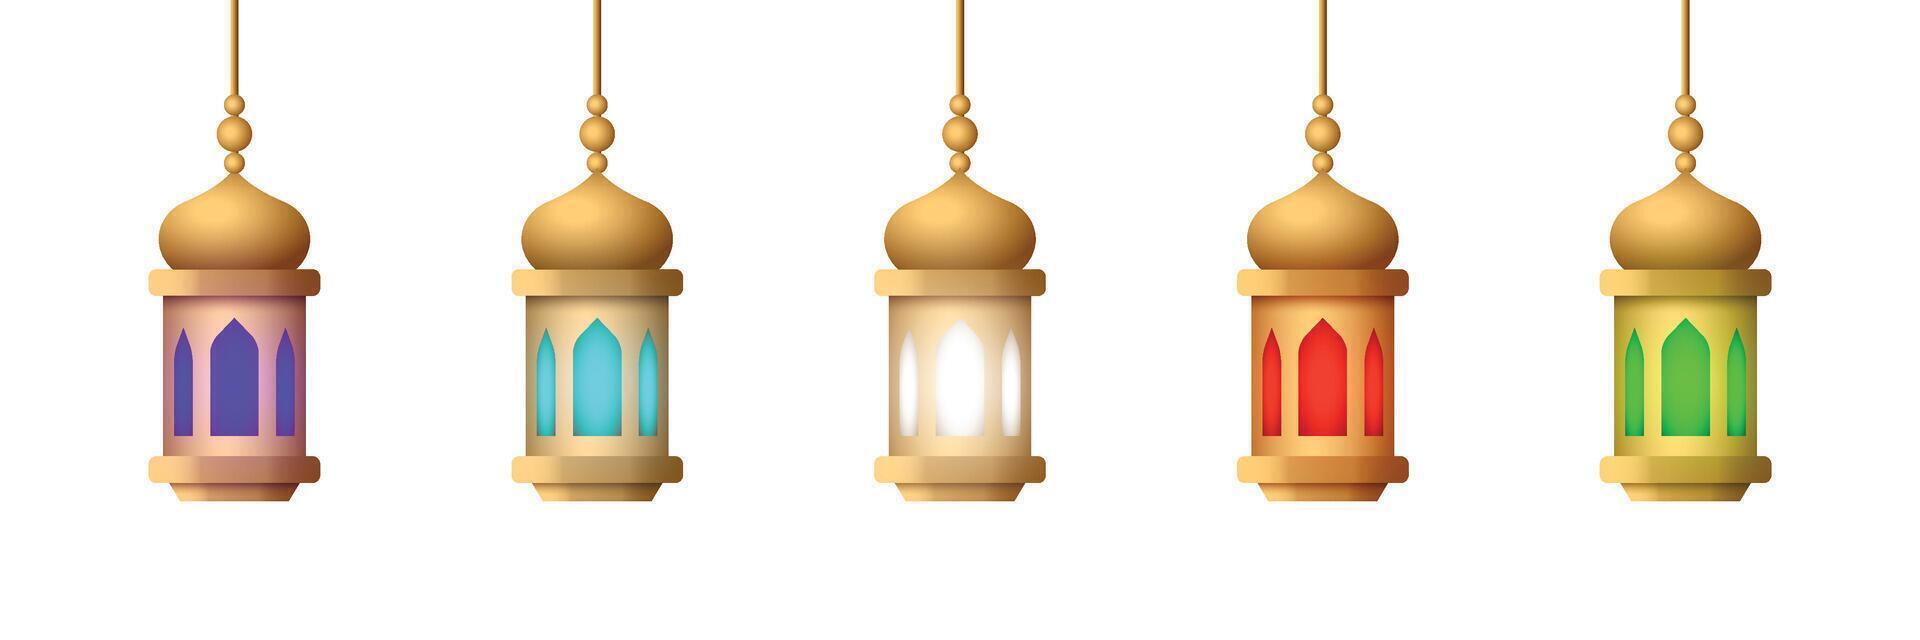 realistisch lantaarn ornament vector reeks verzameling ontwerp